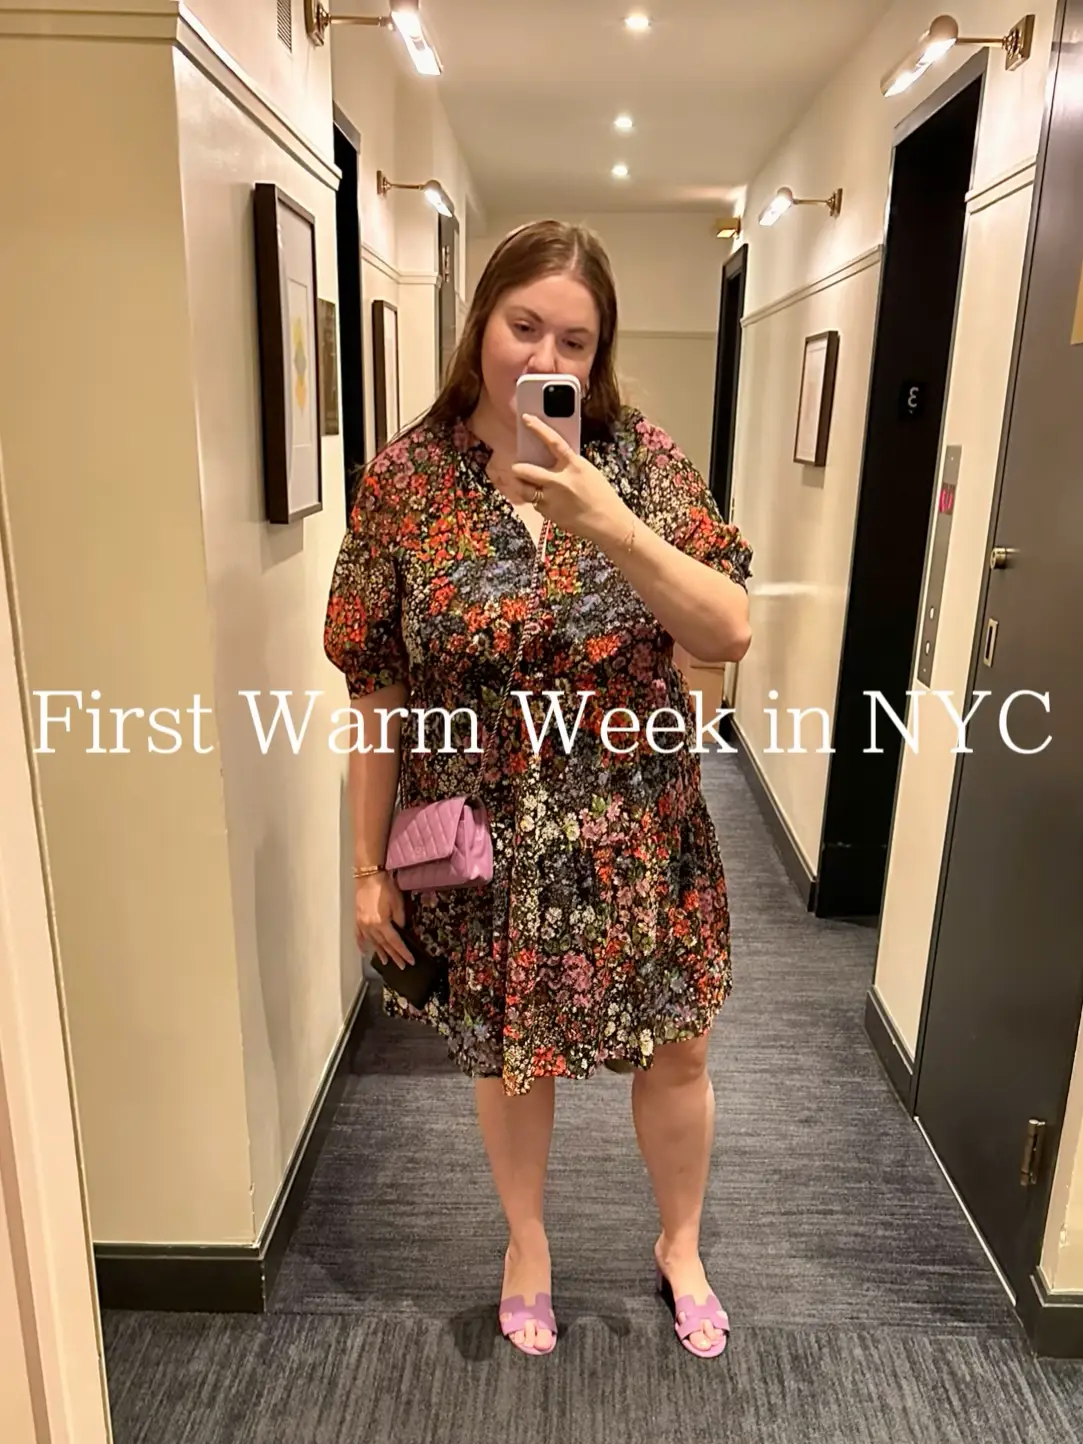 New Chanel Bag + First Warm Week in NYC!, Galeri disiarkan oleh Miranda  Cooper